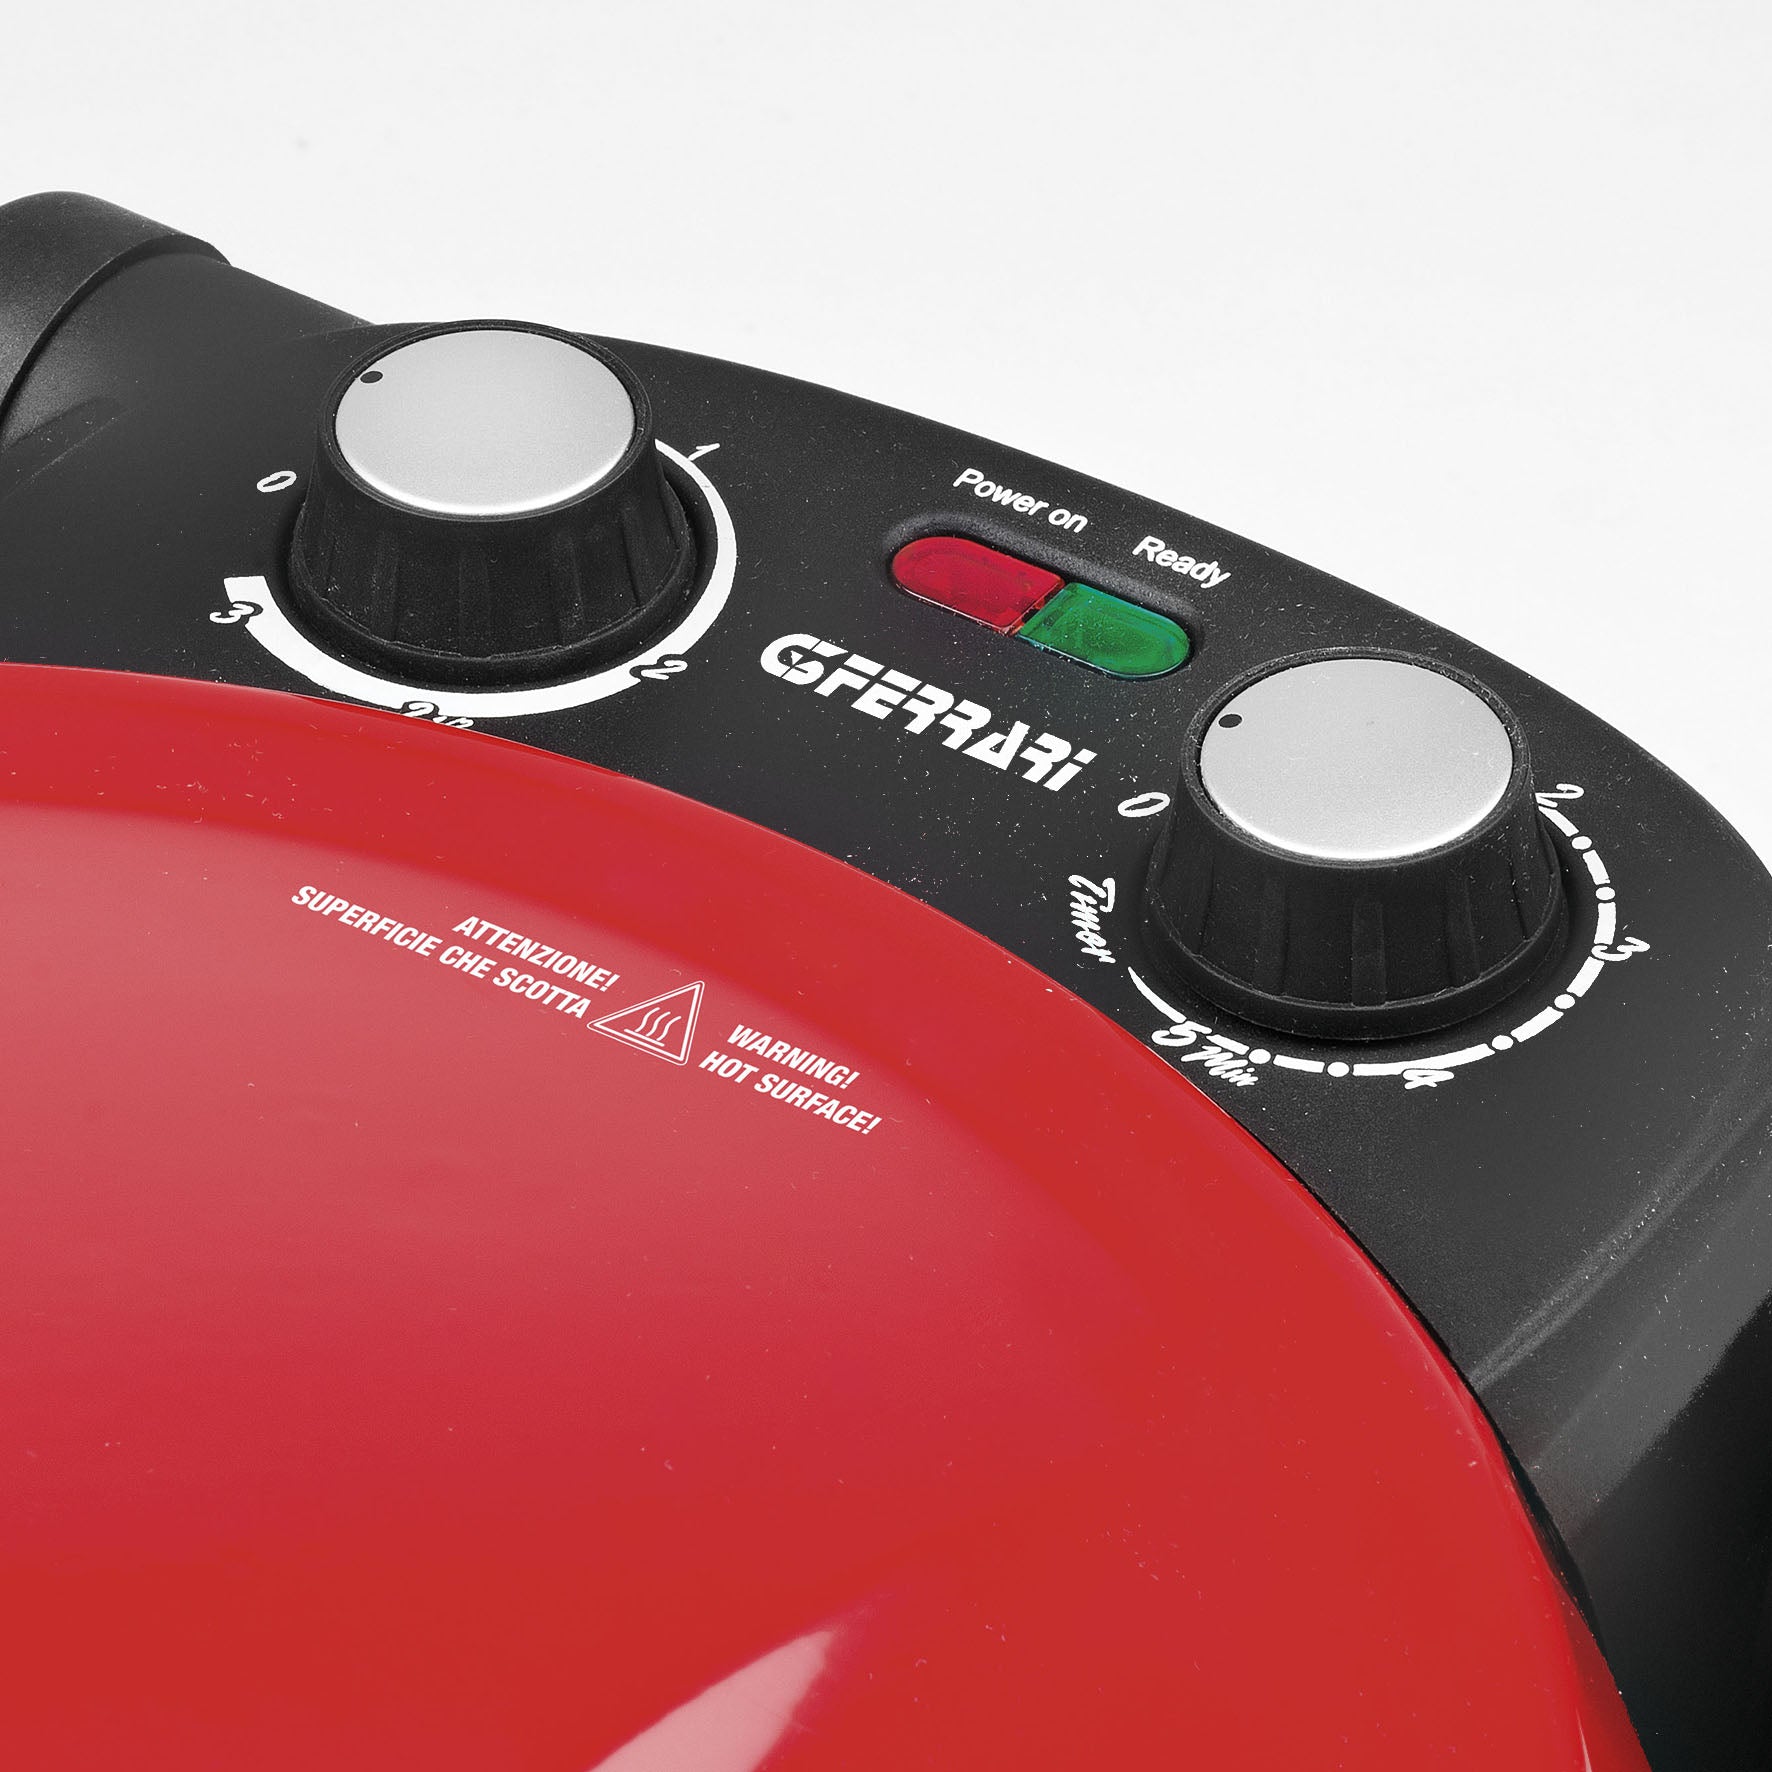 G3 Ferrari G10032 EVO PIZZERIA SNACK NAPOLETANA elektromos pizzasütő fekete/piros színben